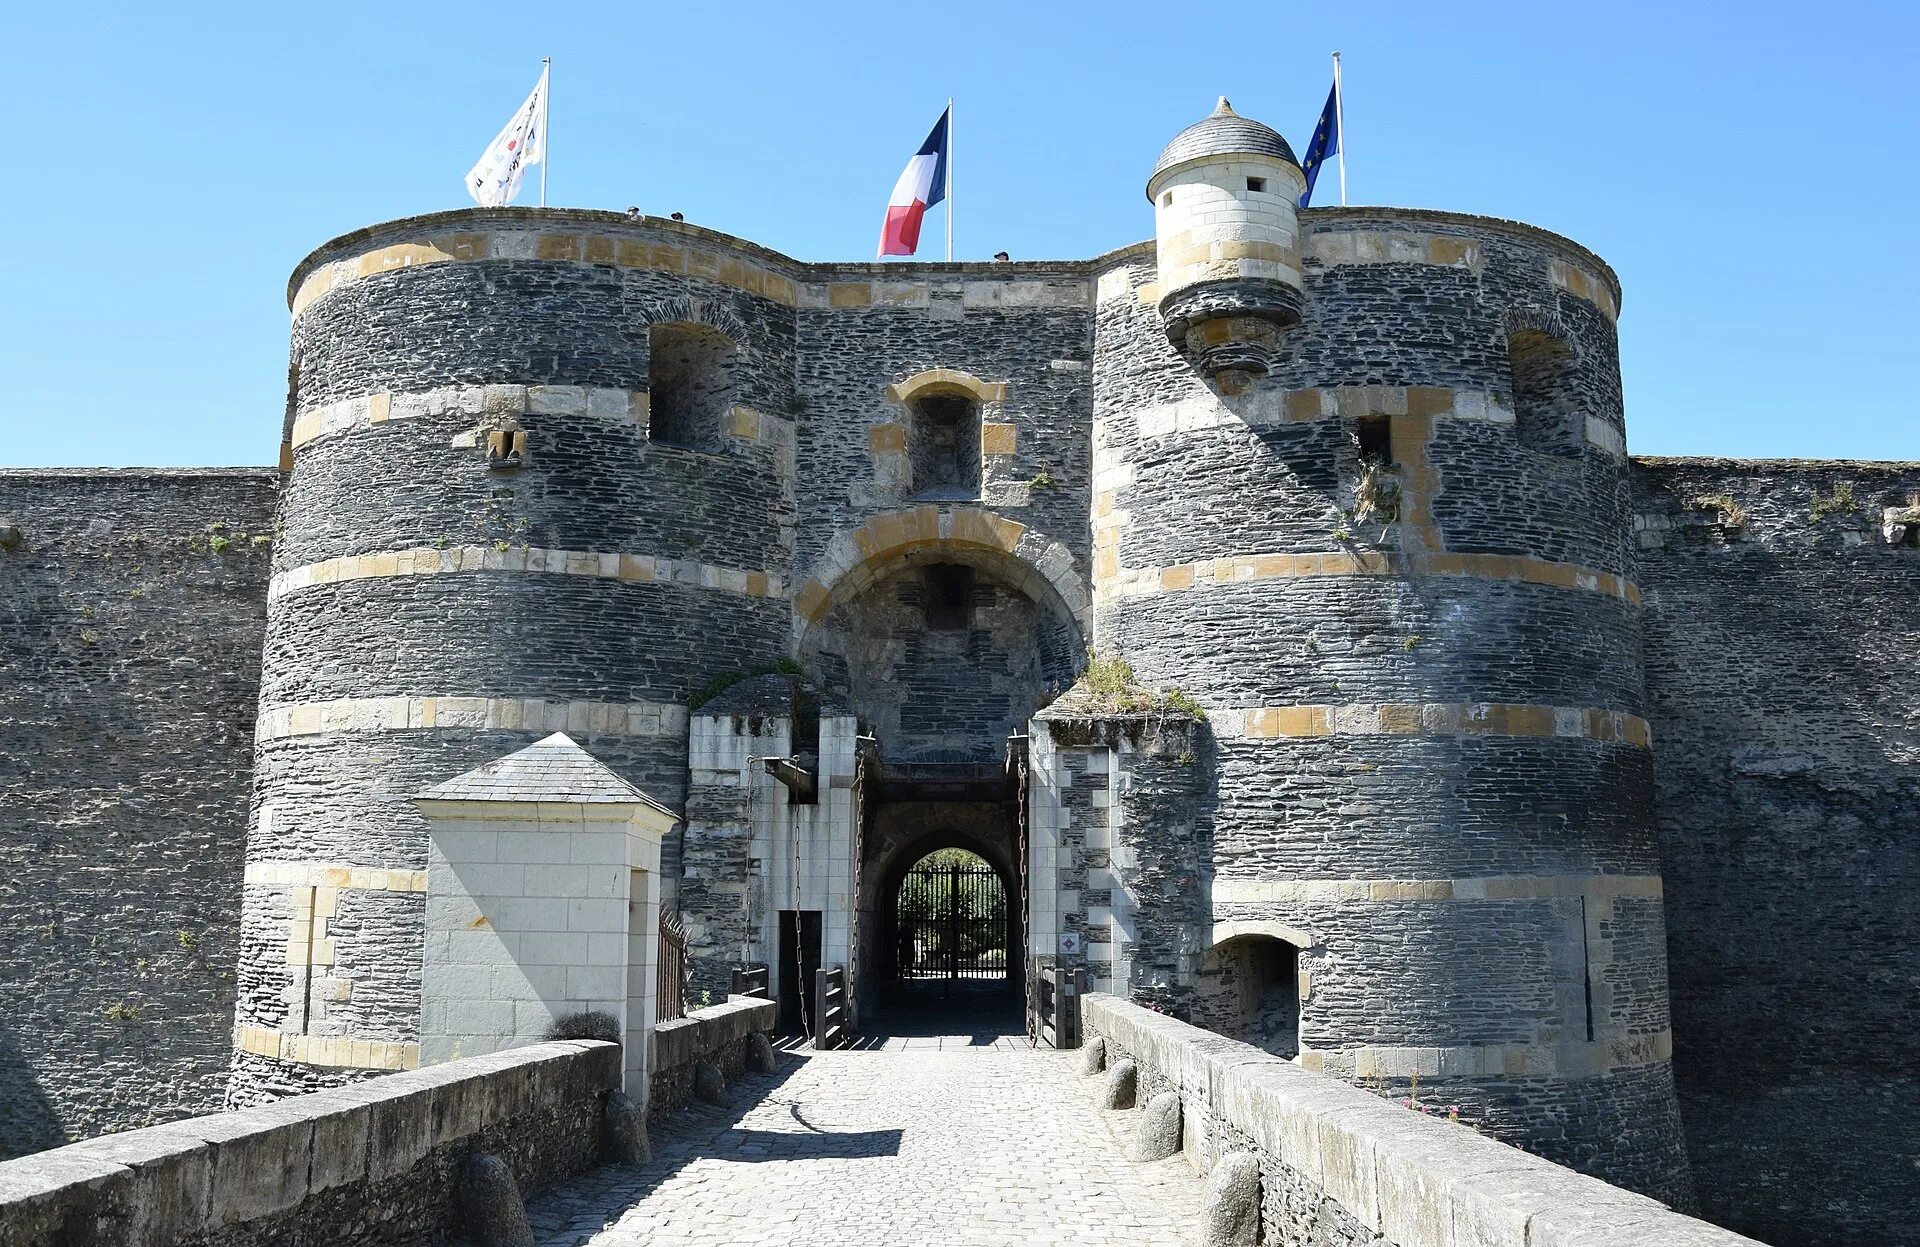 Анже. Анжерский замок Франция. Chateau d'Angers замок. Средневековые замки Франции Анжерский замок. Город Анжер Франция.